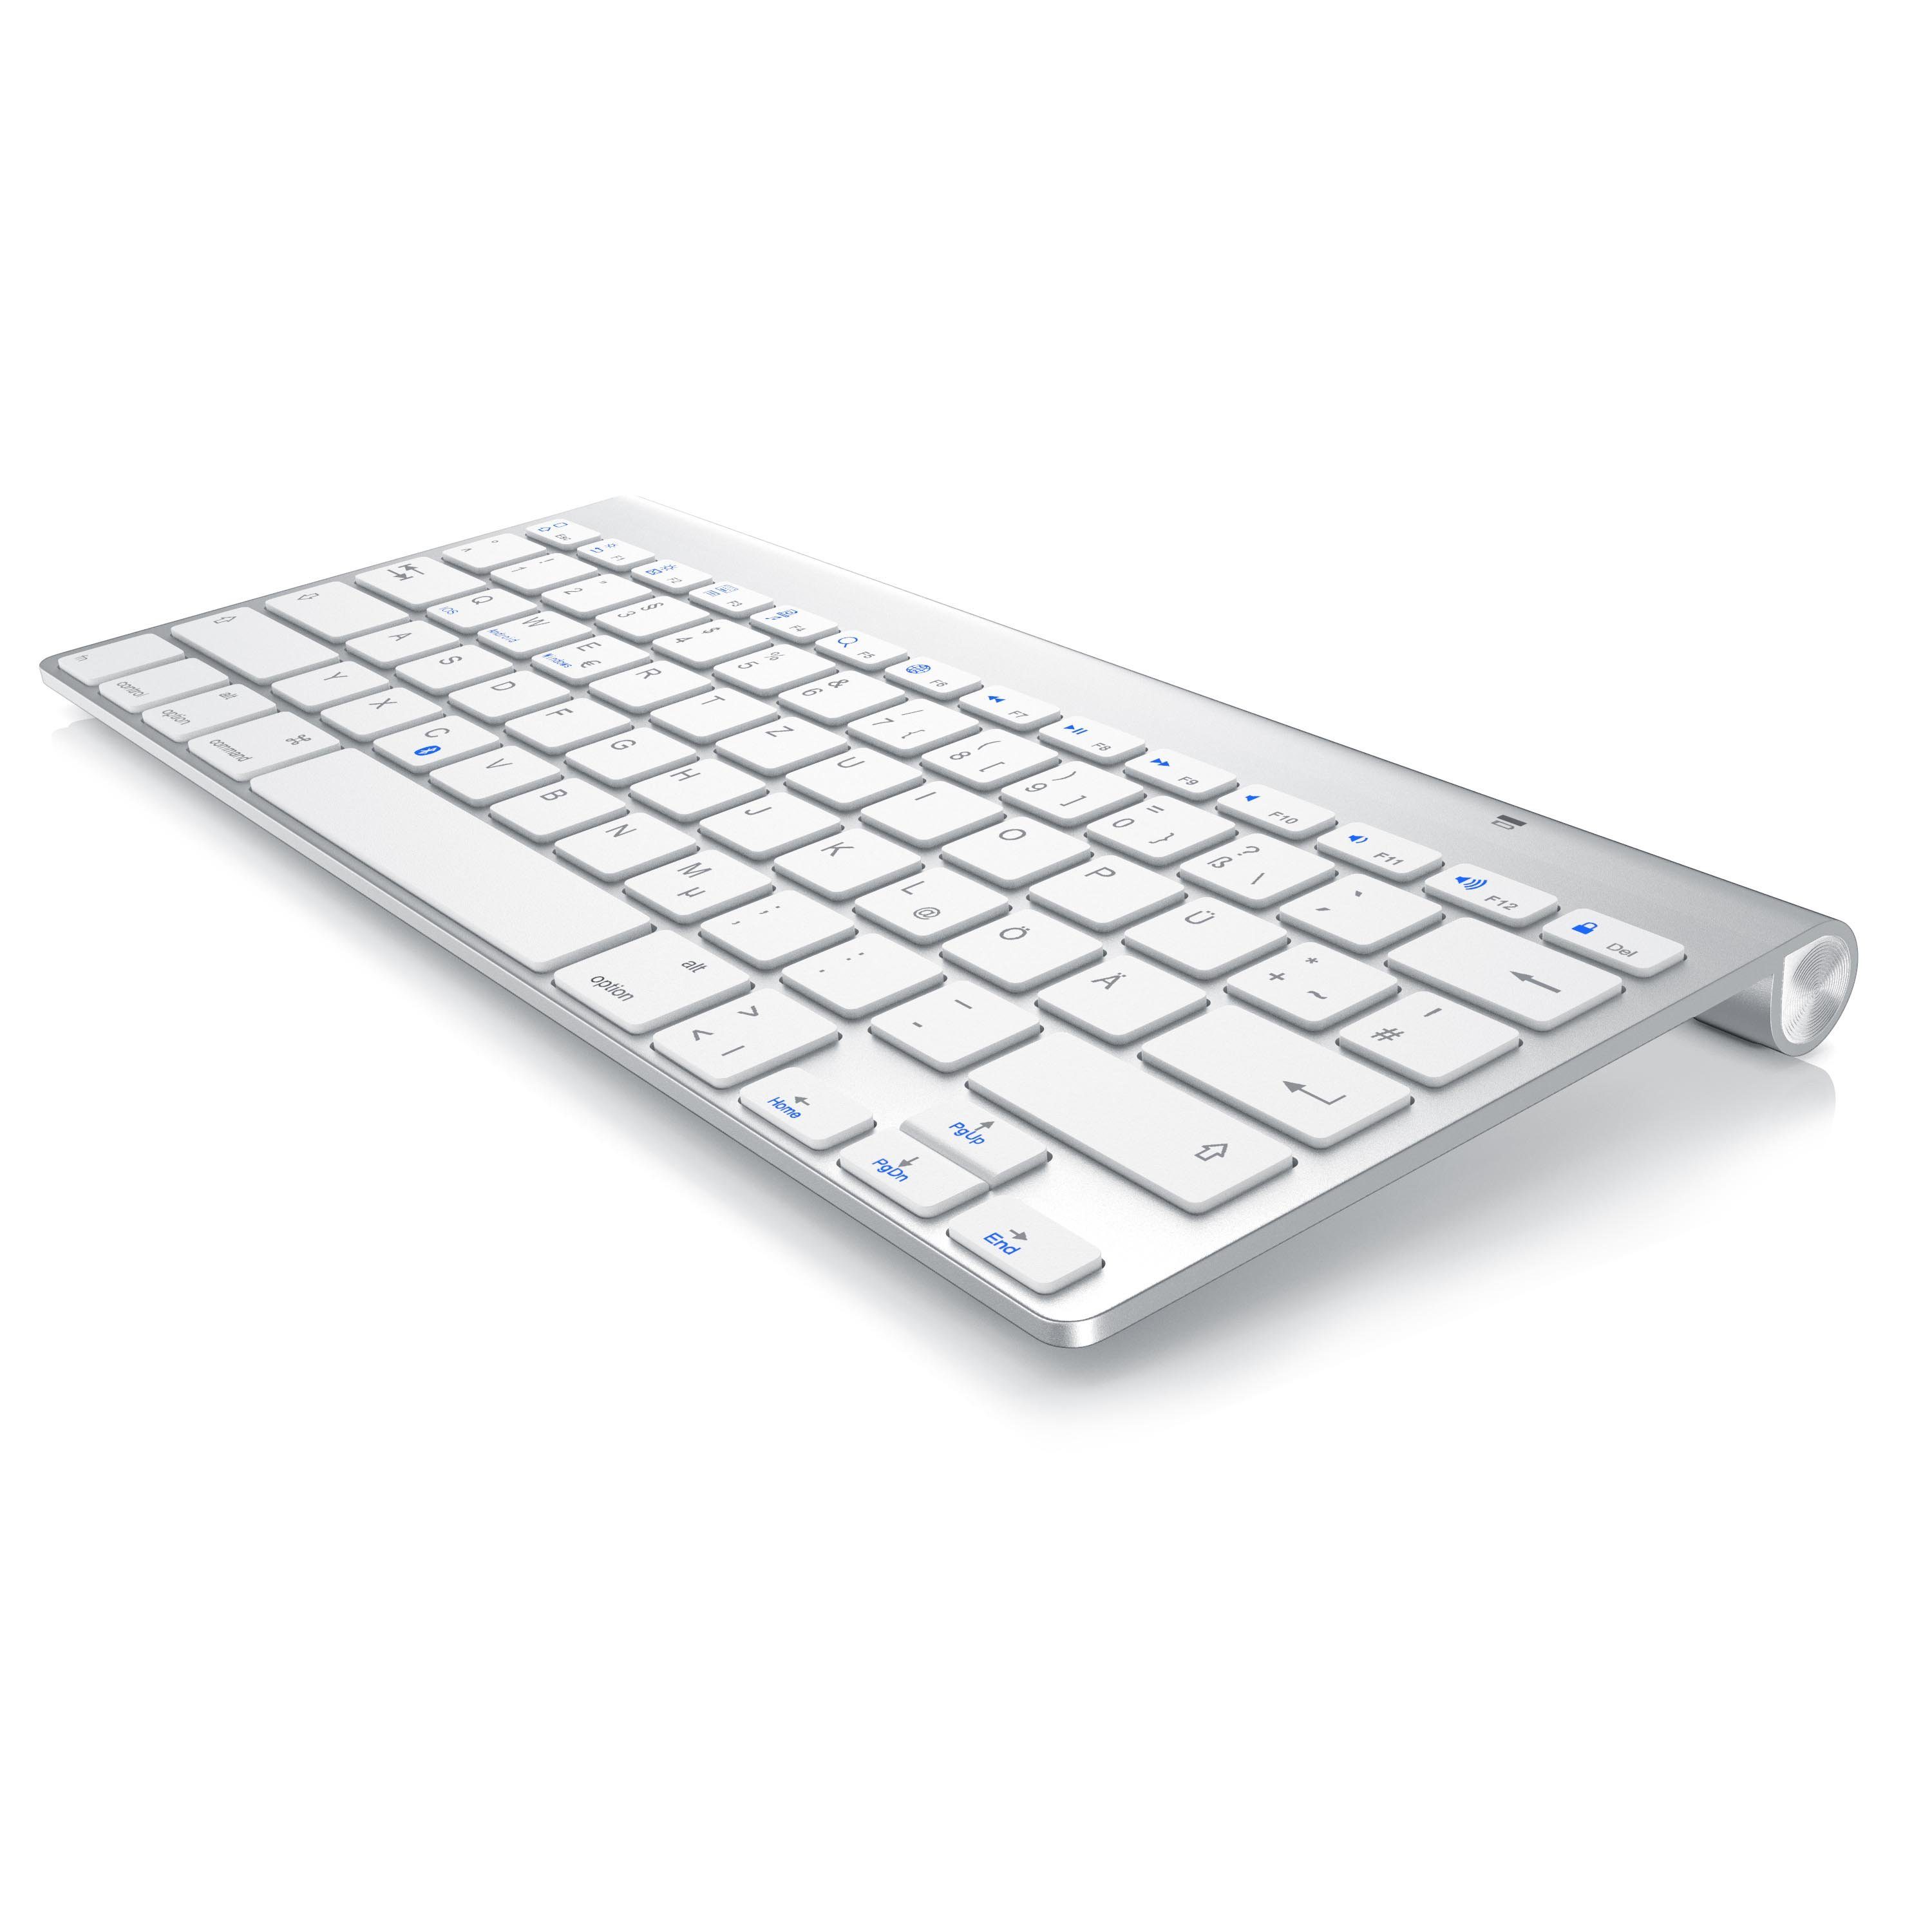 Aplic Wireless-Tastatur (Bluetooth-Tastatur für iOS, Android, Windows  QWERTZ Layout / bis zu 10m Reichweite) online kaufen | OTTO